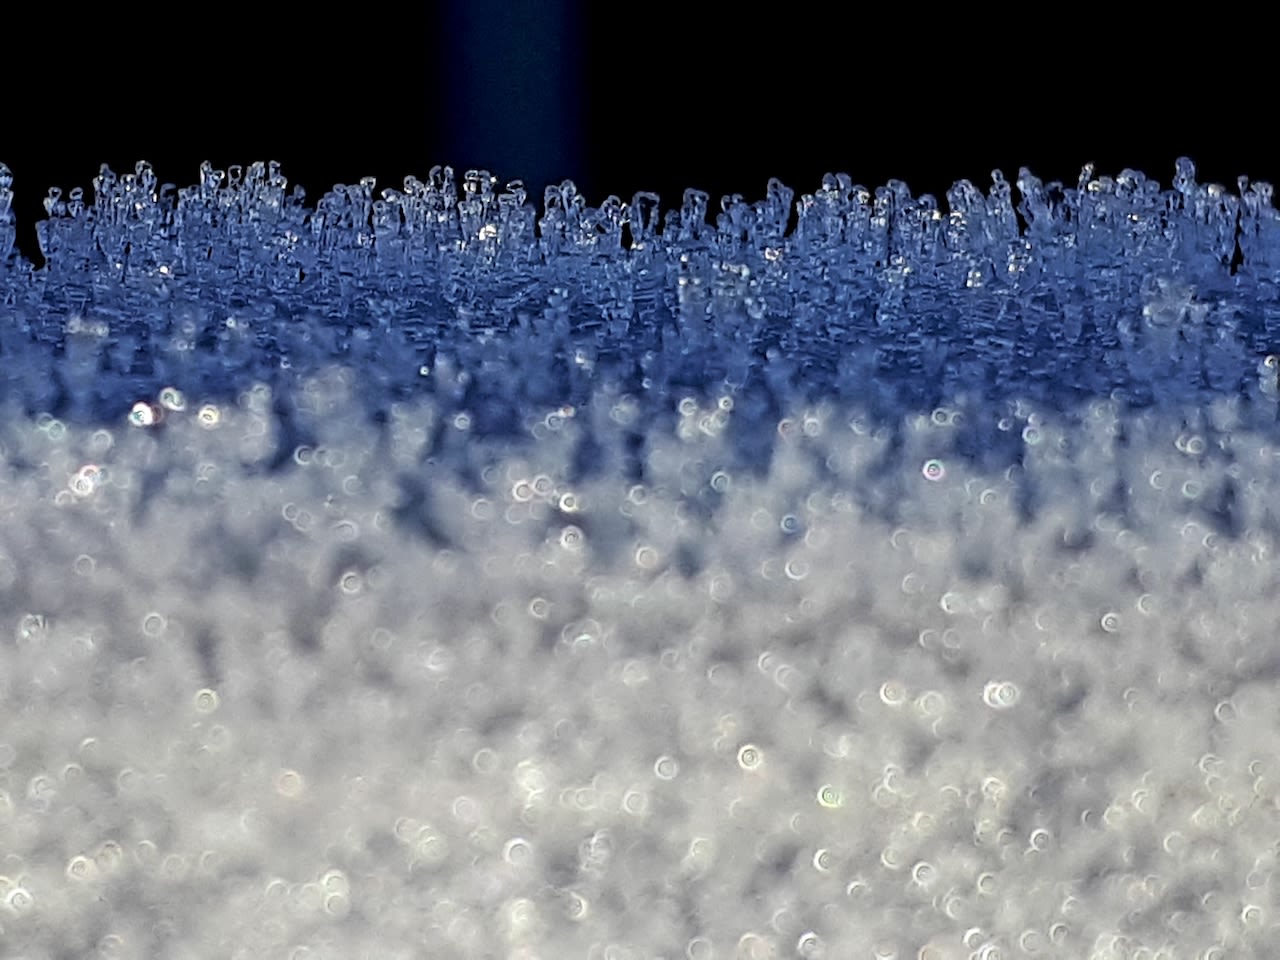 Als dit soort losse ijskristallen van rijp insneeuwen vormt zich een zwakke laag binnenin een sneeuwdek die lastig te herkennen is. Foto: Marianne de Blauw-Ganzevles, gemaakt in november 2019.